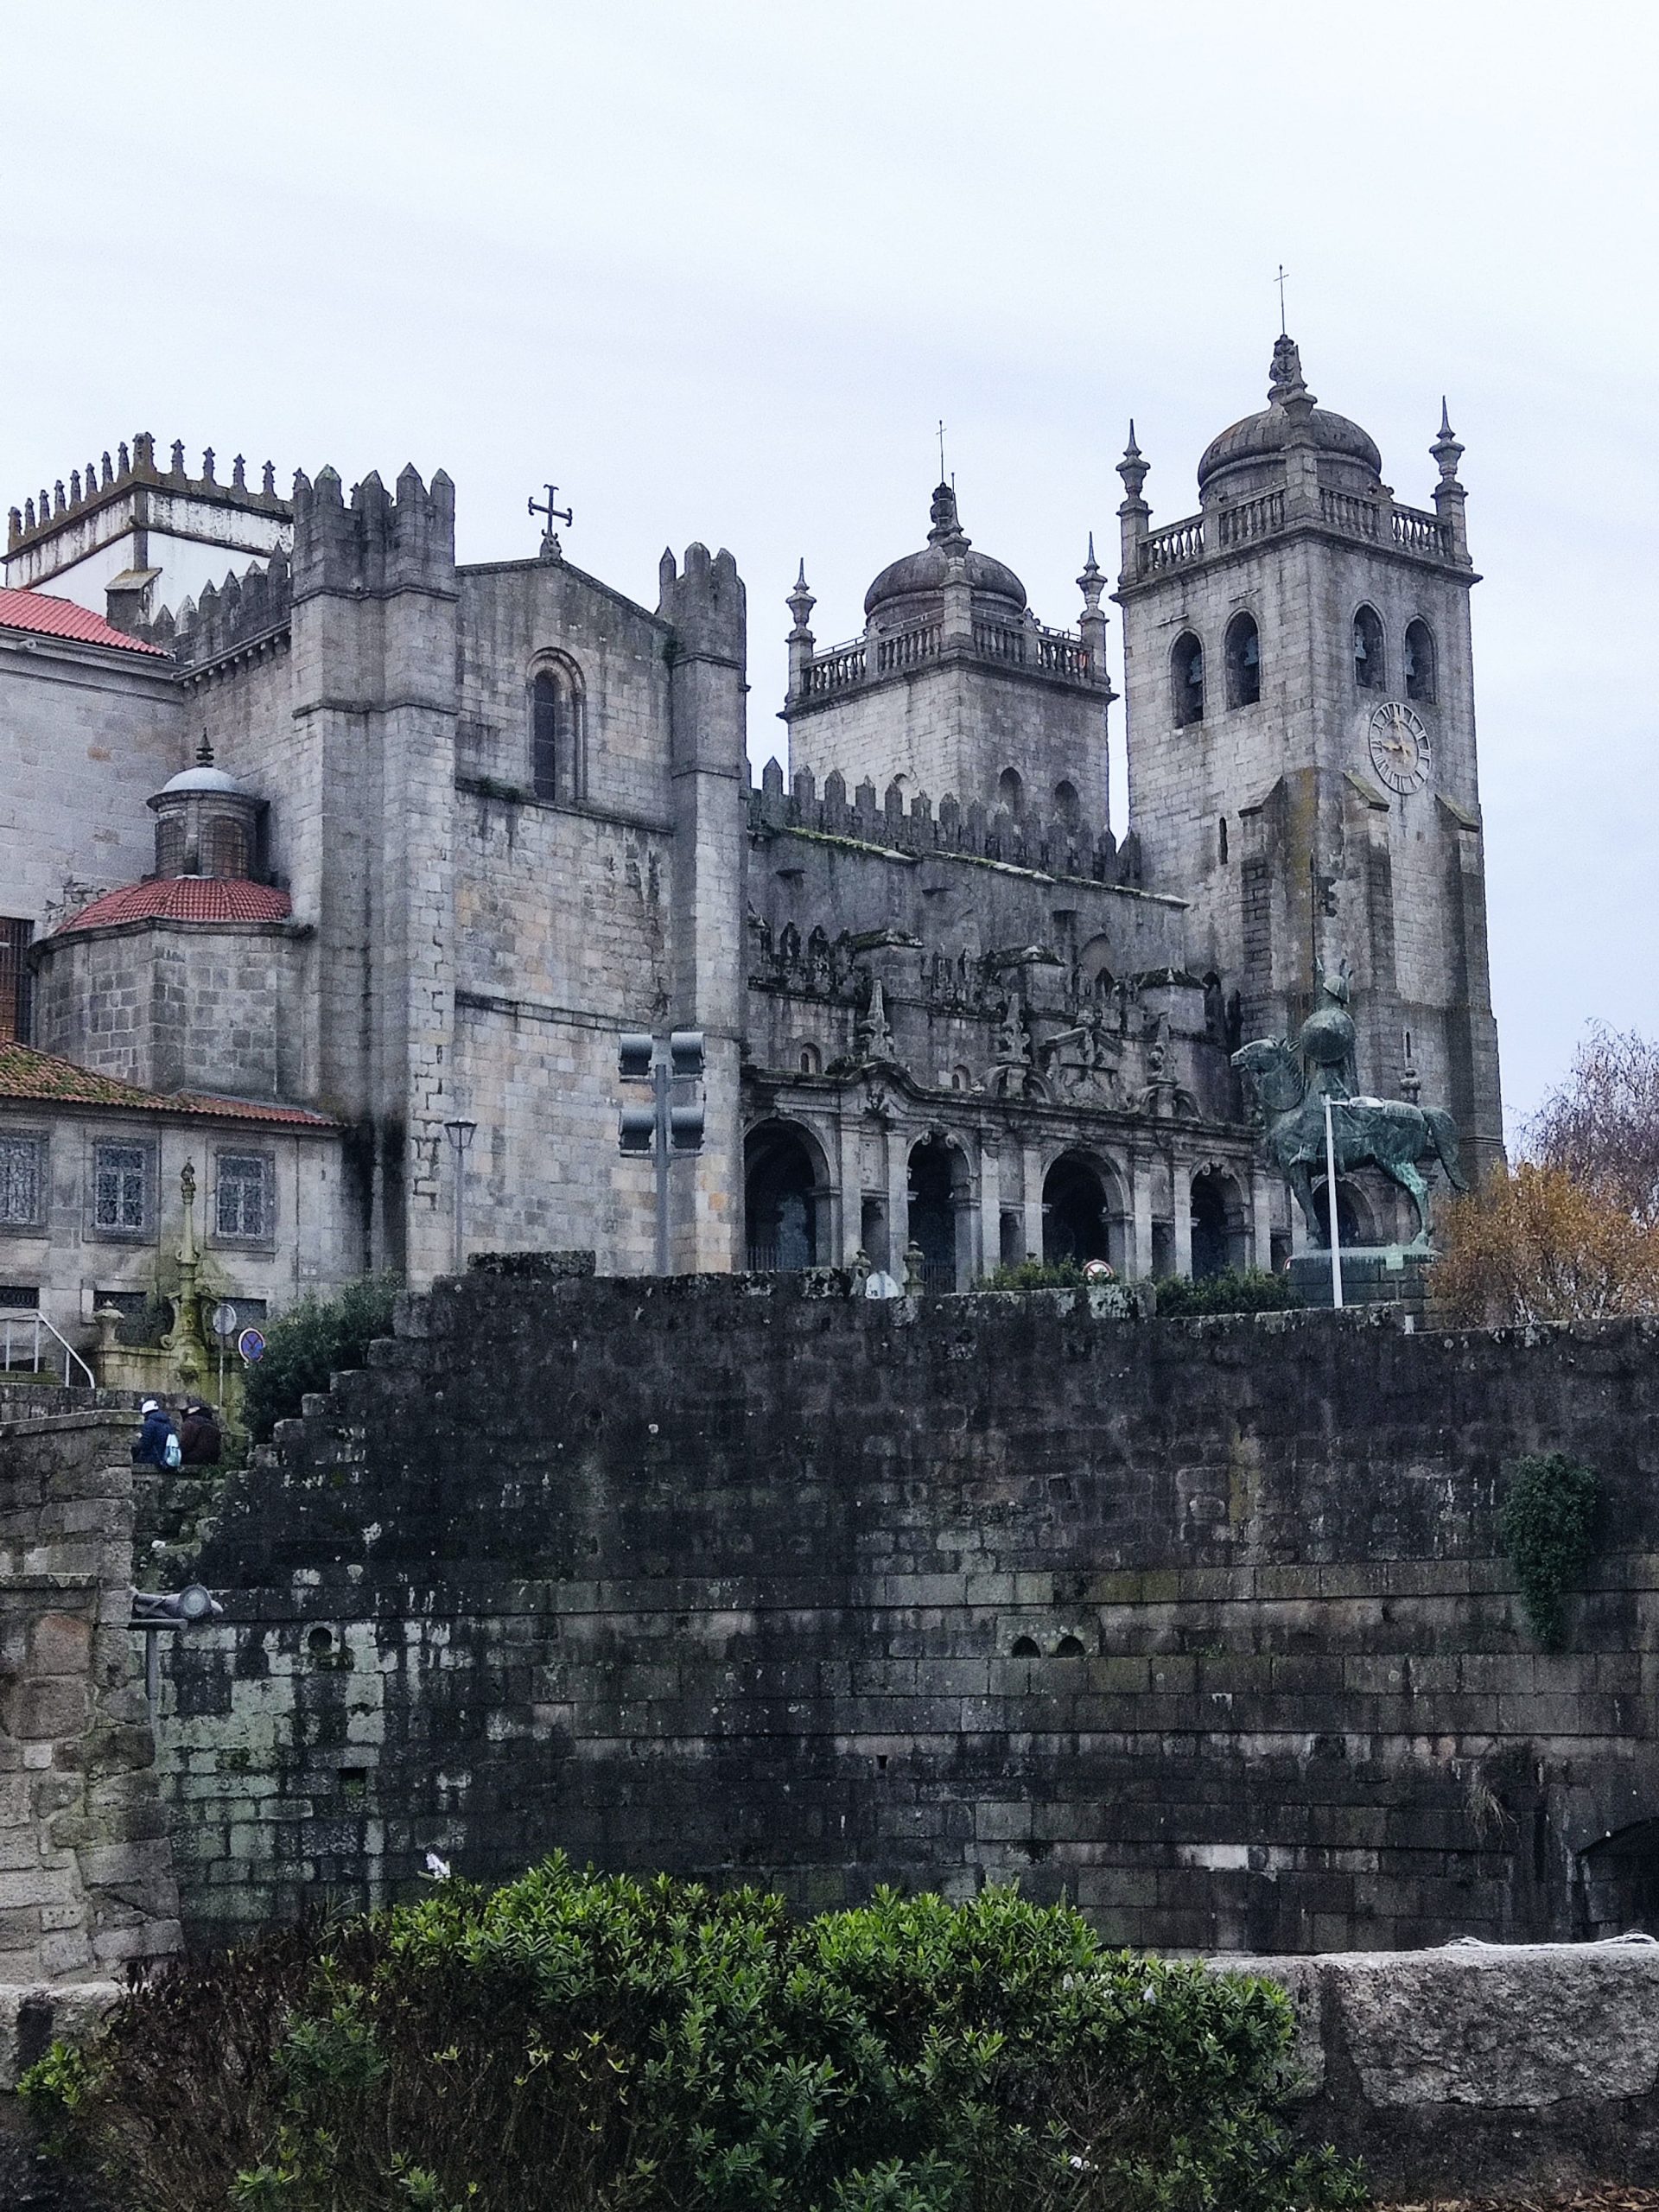 Qué ver y hacer en Oporto - Catedral de Oporto (fachada)